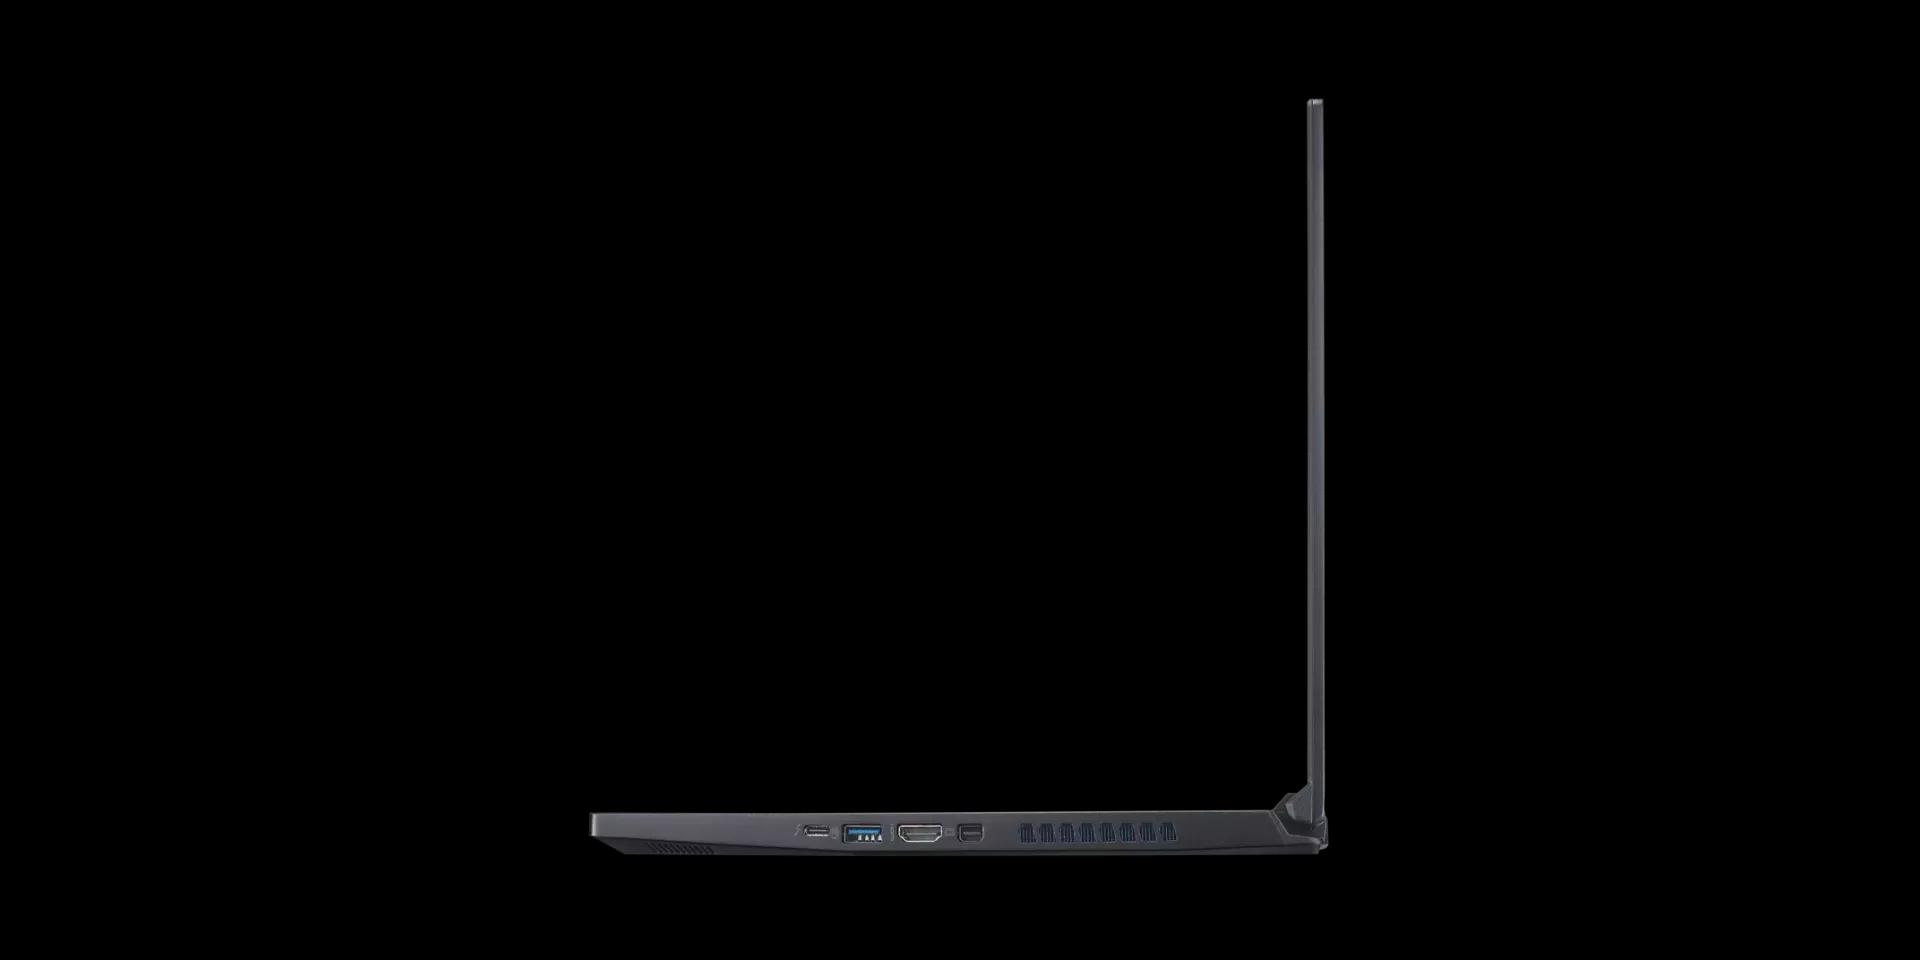 Acer Predator Triton 300 2020 i7 10TH GEN | RTX 2060 | 15.6" FHD 120Hz | 16GB RAM/ 512GB SSD